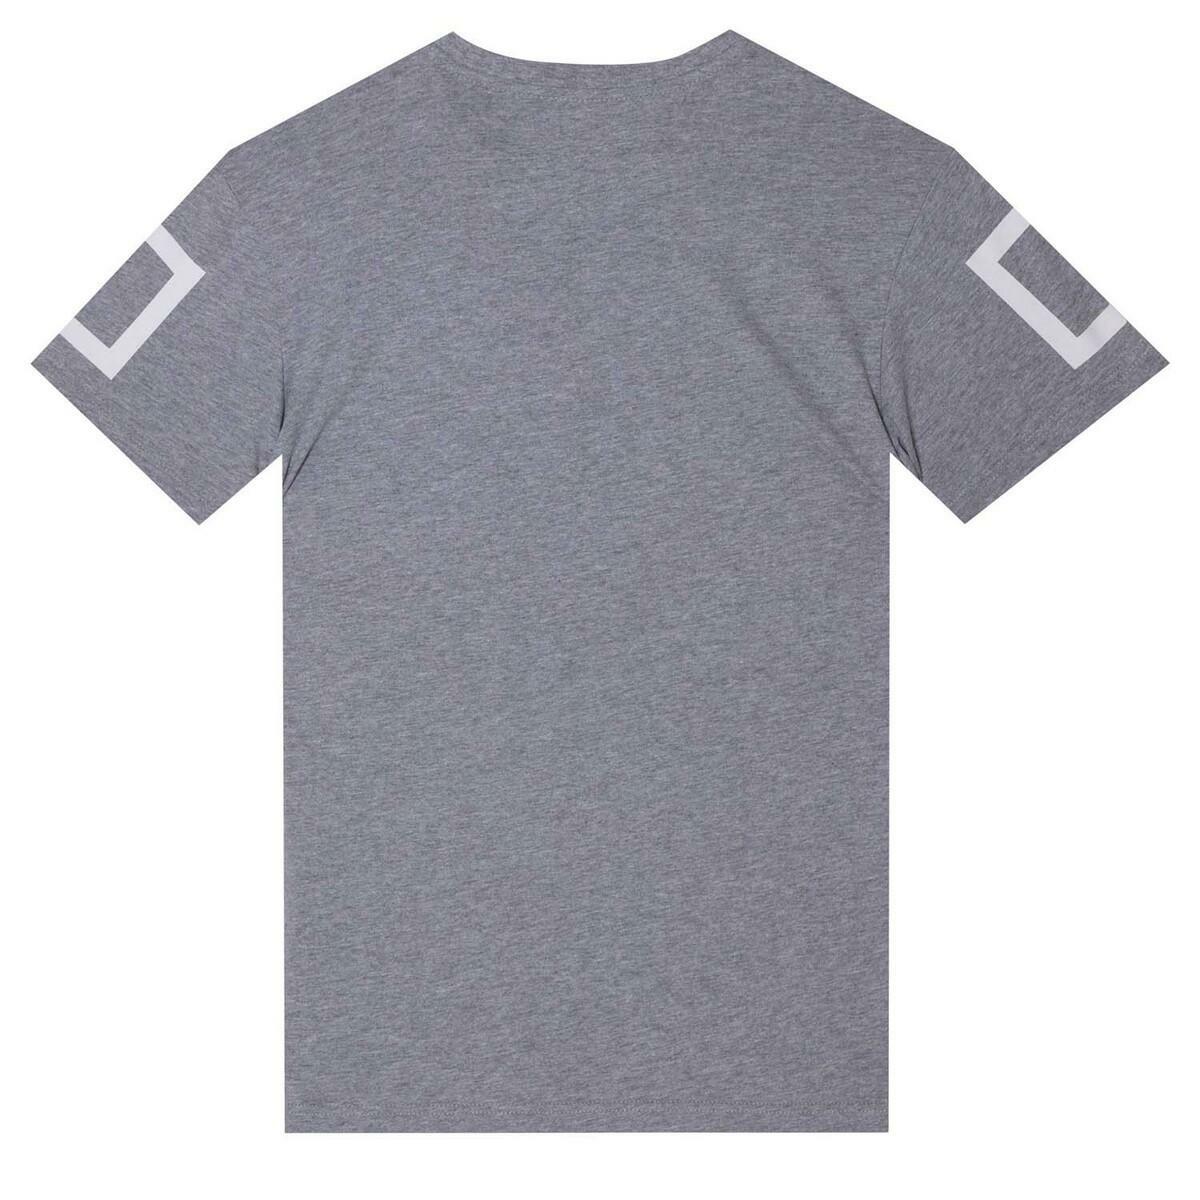 Tatami Fightwear Katakana T-Shirt Grey TATT1060GY